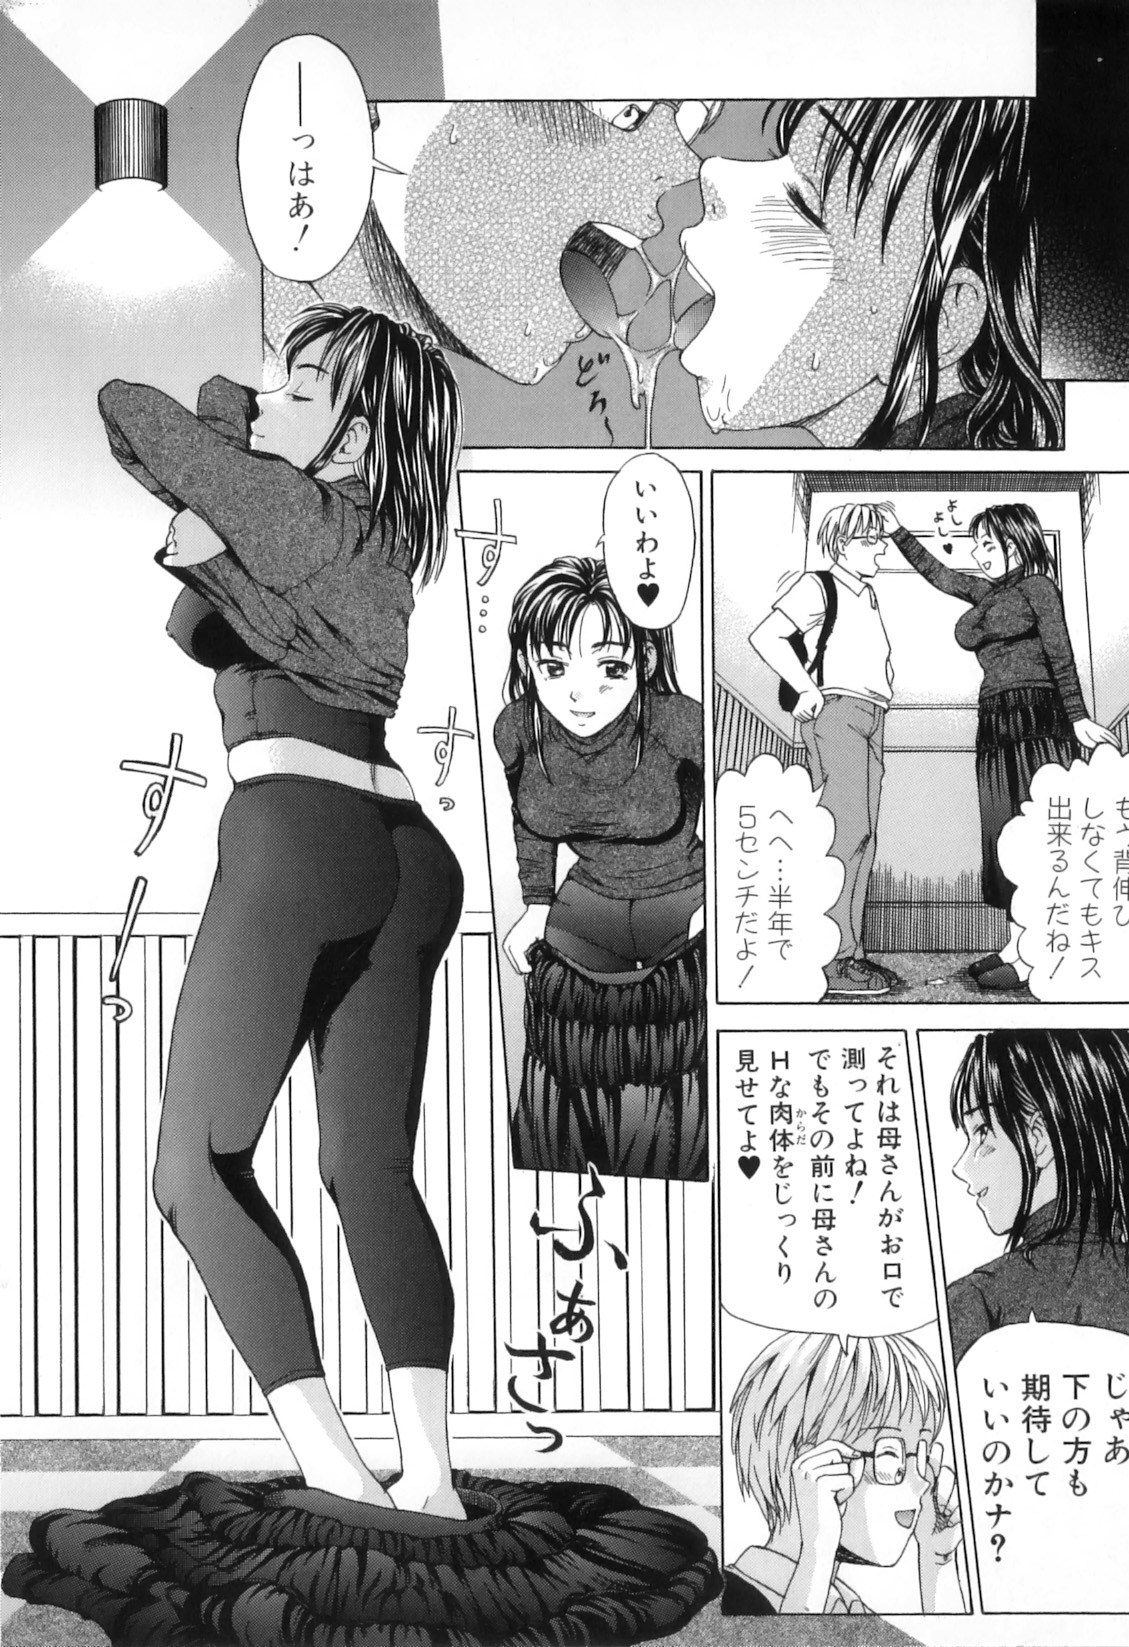 [Anthology] Boshi Chijou Kitan 2 page 28 full